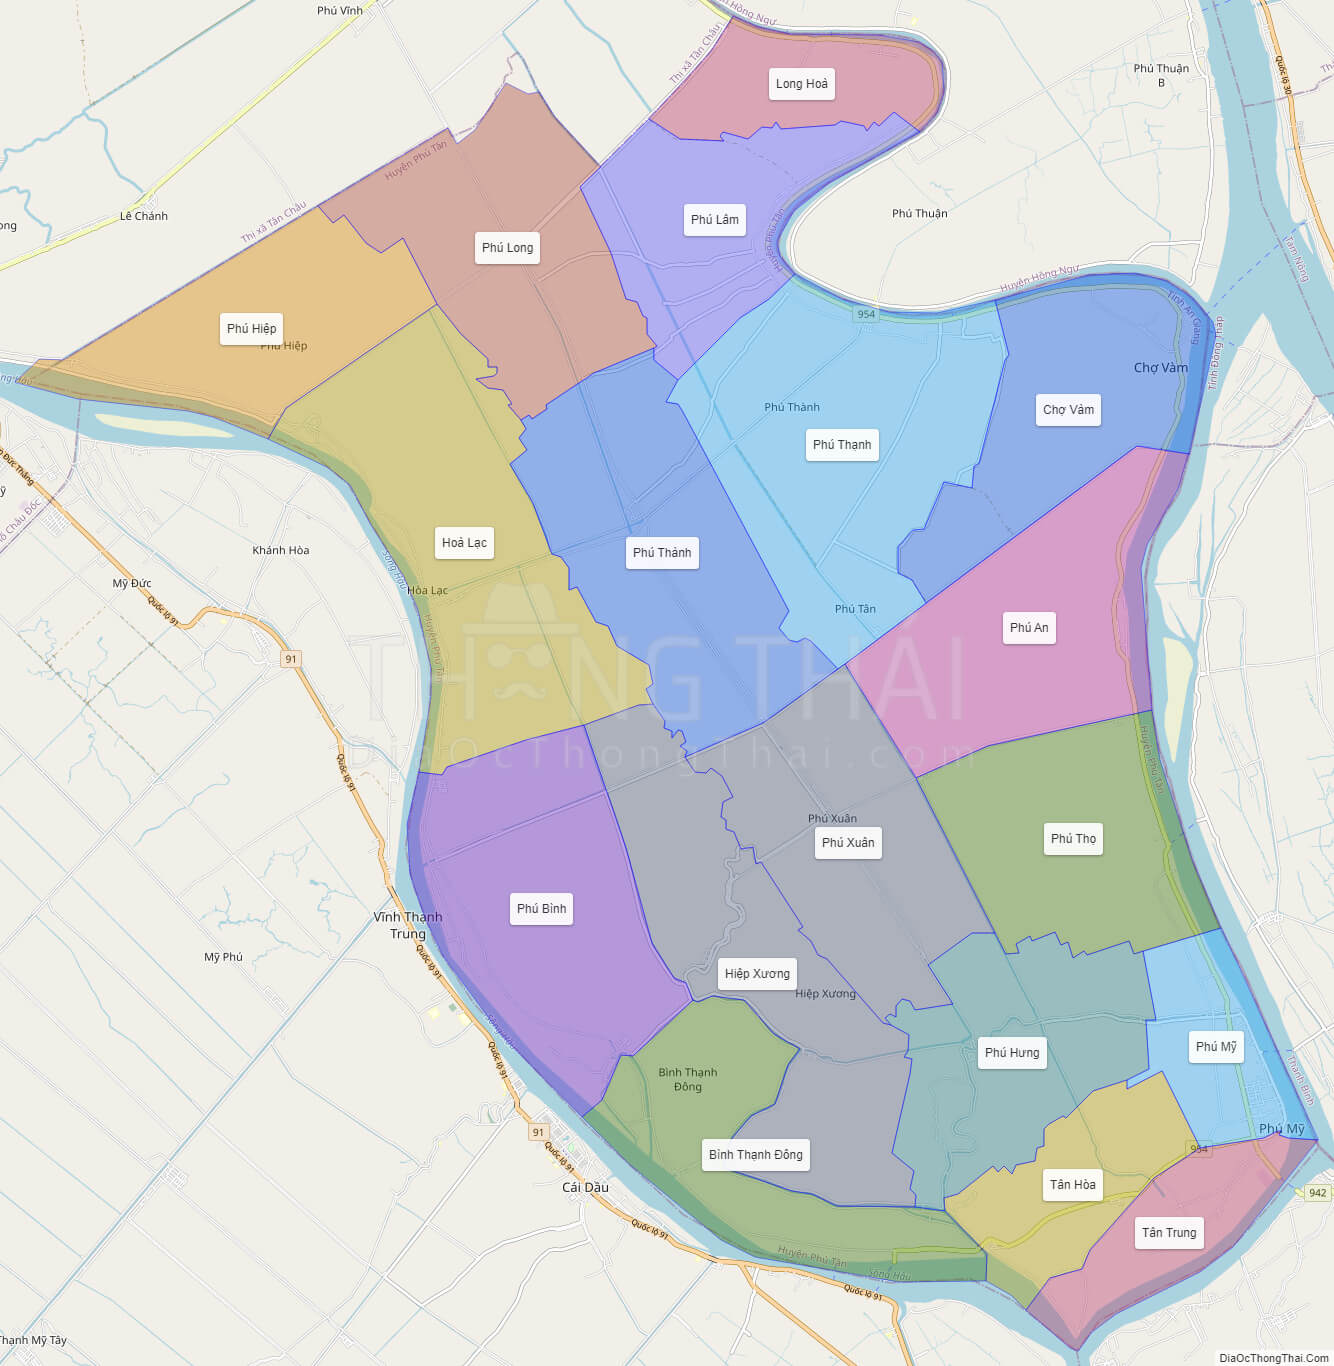 Bản đồ huyện Phú Tân - An Giang năm 2024 sẽ cho thấy sự phát triển đáng kể của khu vực này. Với nhiều dự án mới trong lĩnh vực du lịch và nông nghiệp, Phú Tân trở thành địa điểm thu hút các nhà đầu tư và du khách. Hãy cùng khám phá bản đồ để tìm hiểu thêm!